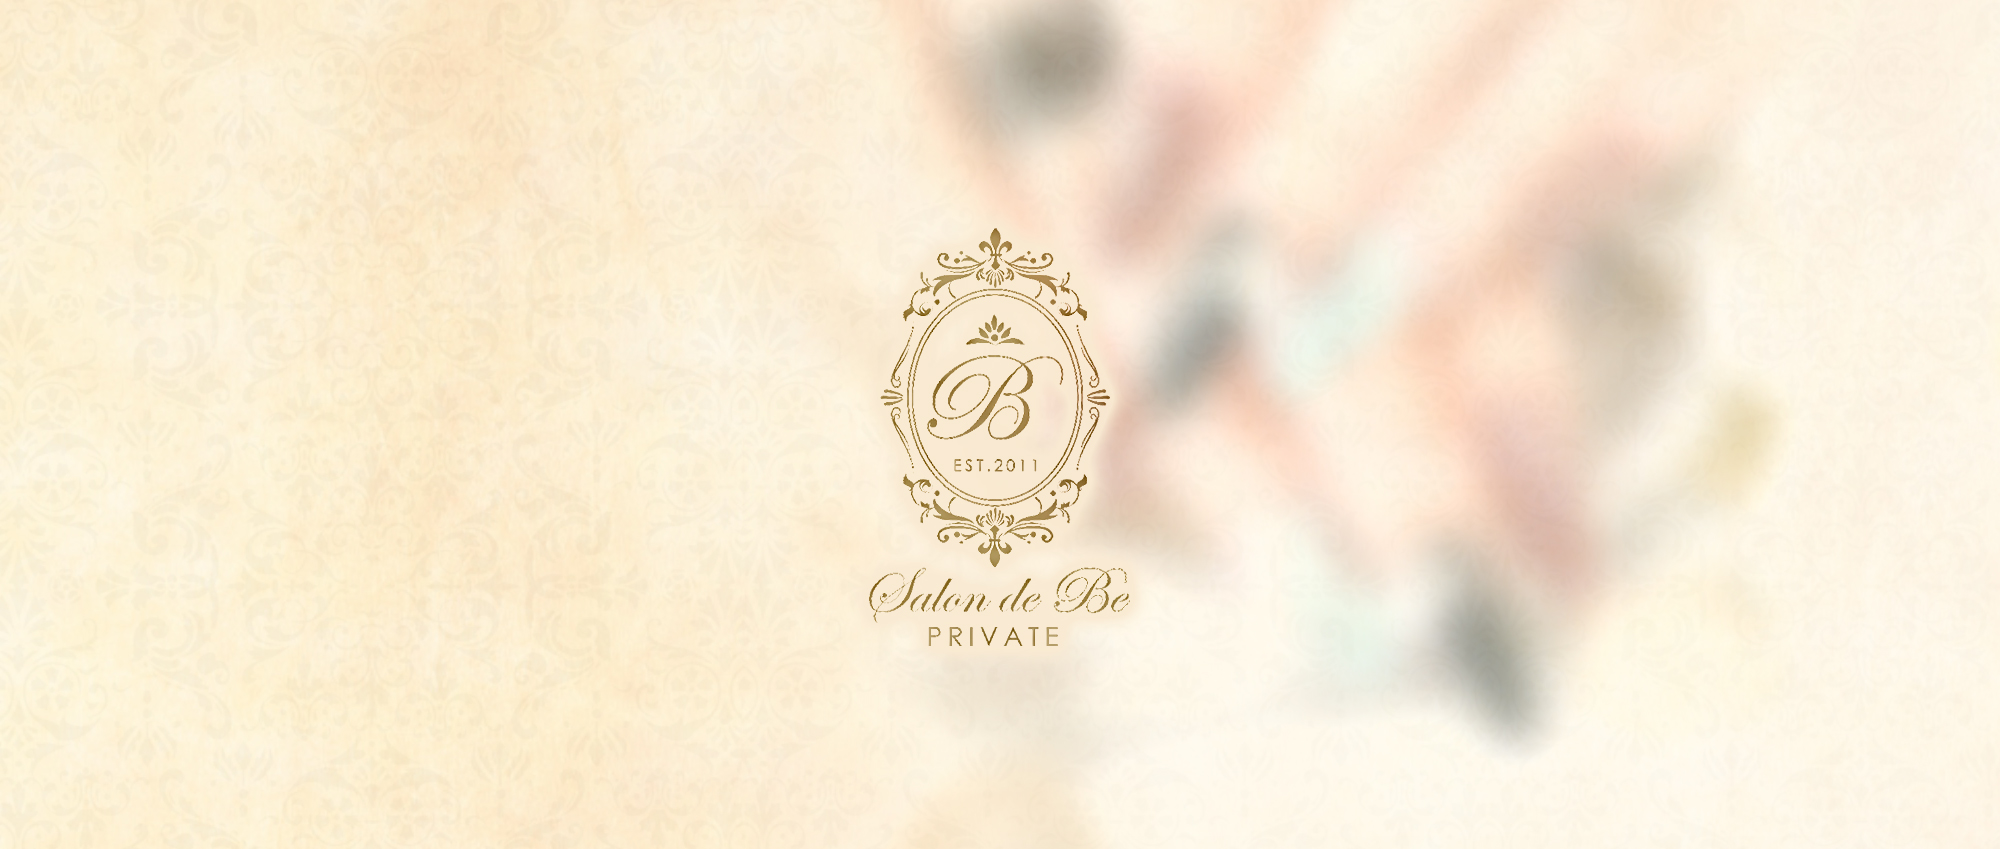 Private Nail Care Salon～Salon de Be～